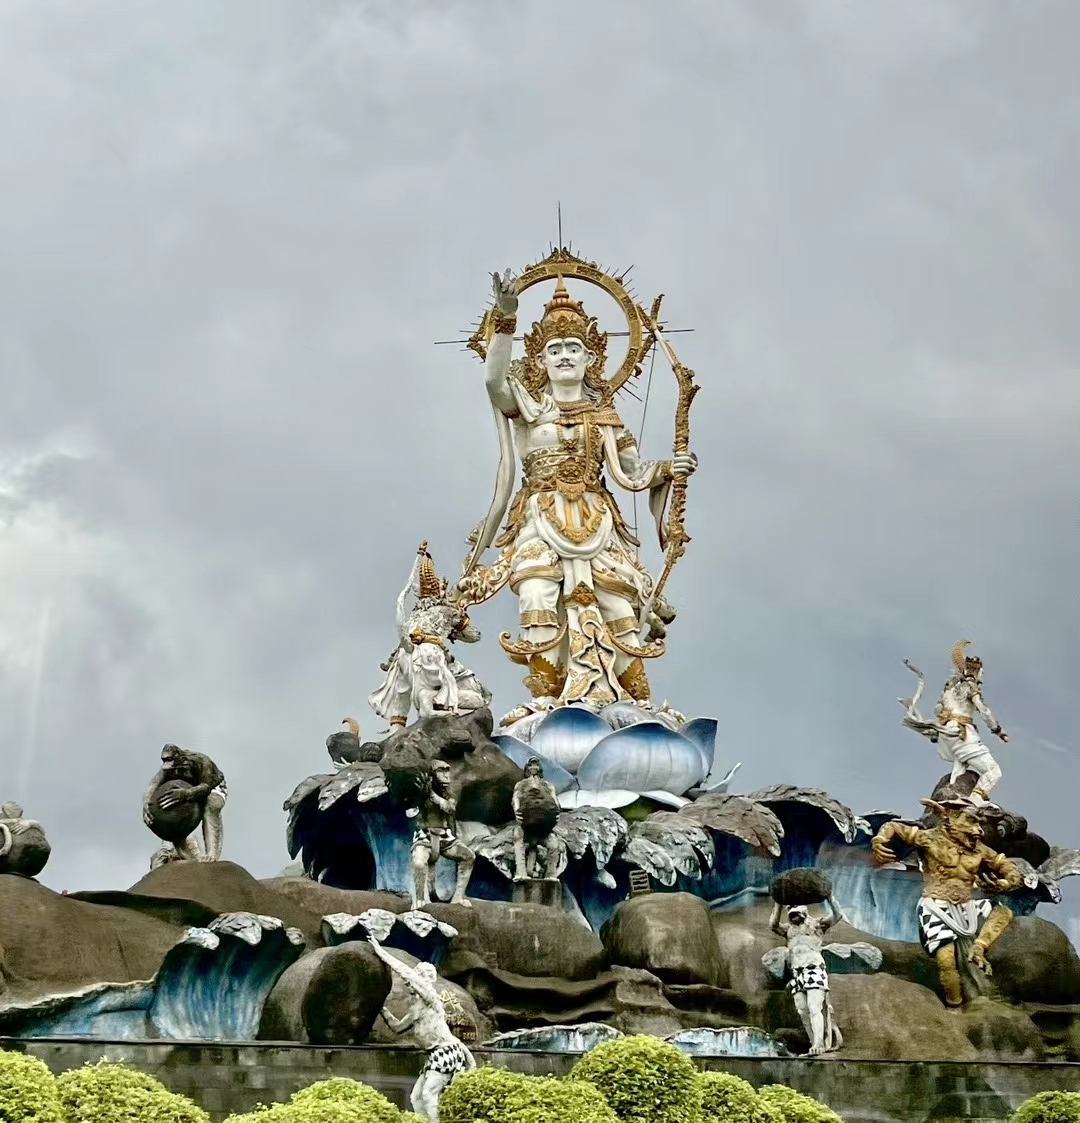 东帝汶的景色，和东南亚很多国家一样，都是信仰佛教的国土，愿新年大家心想事成，健康平安。